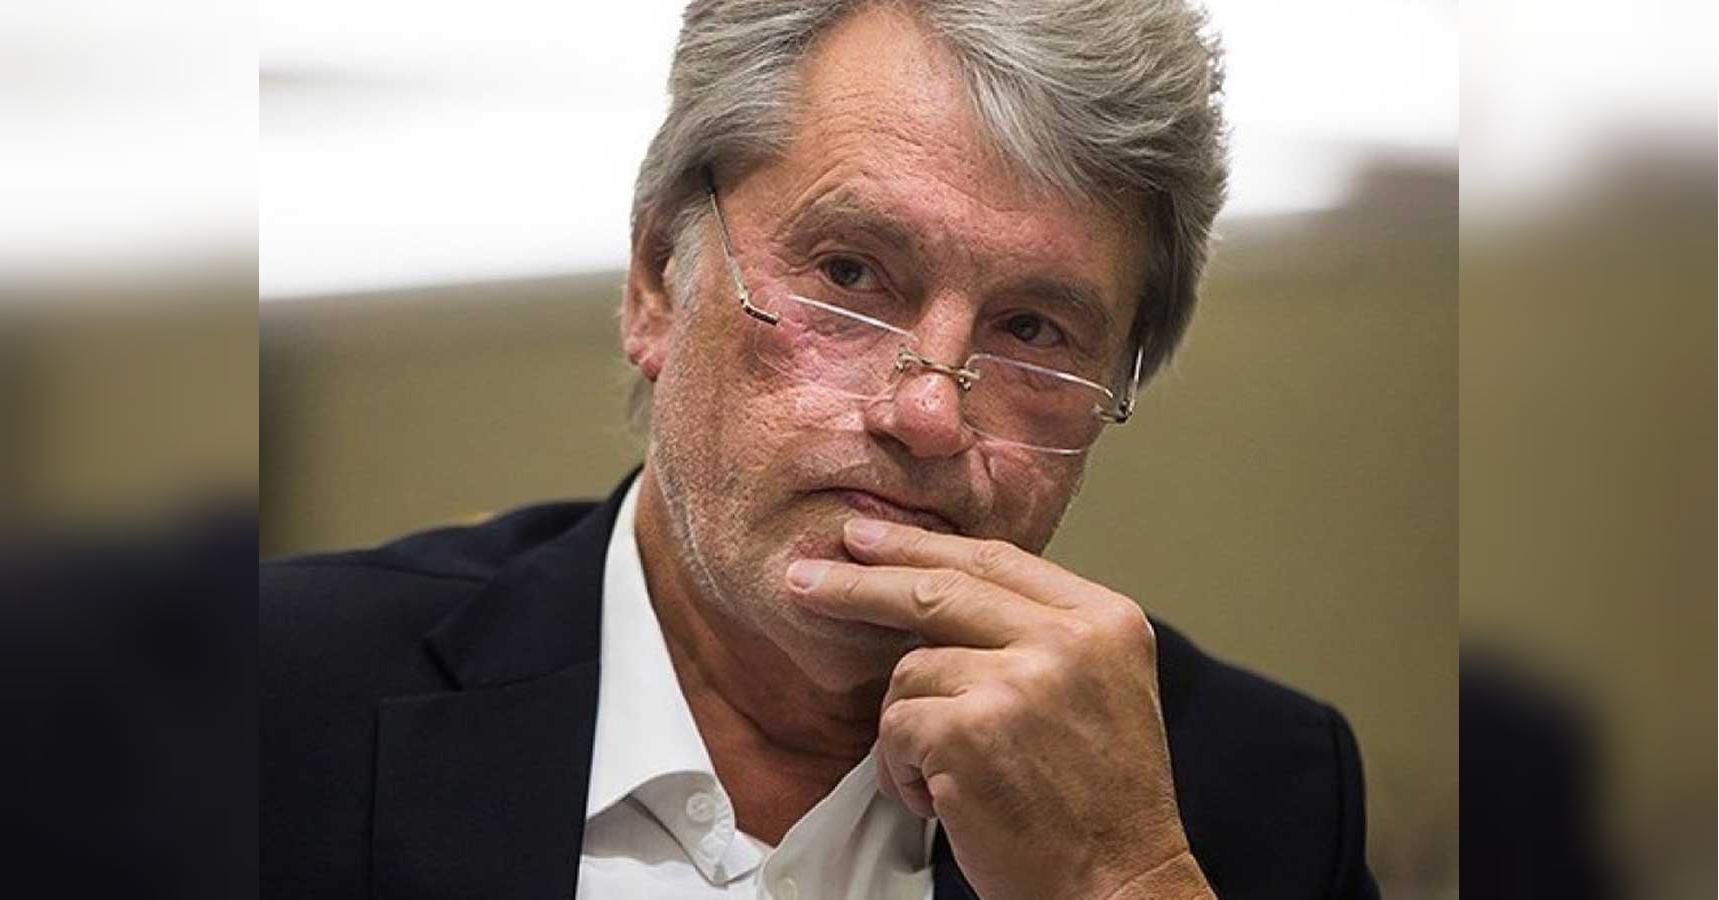 Ющенко ярко ответил на обвинения в сговоре с Януковичем и воровстве 500 млн гривен